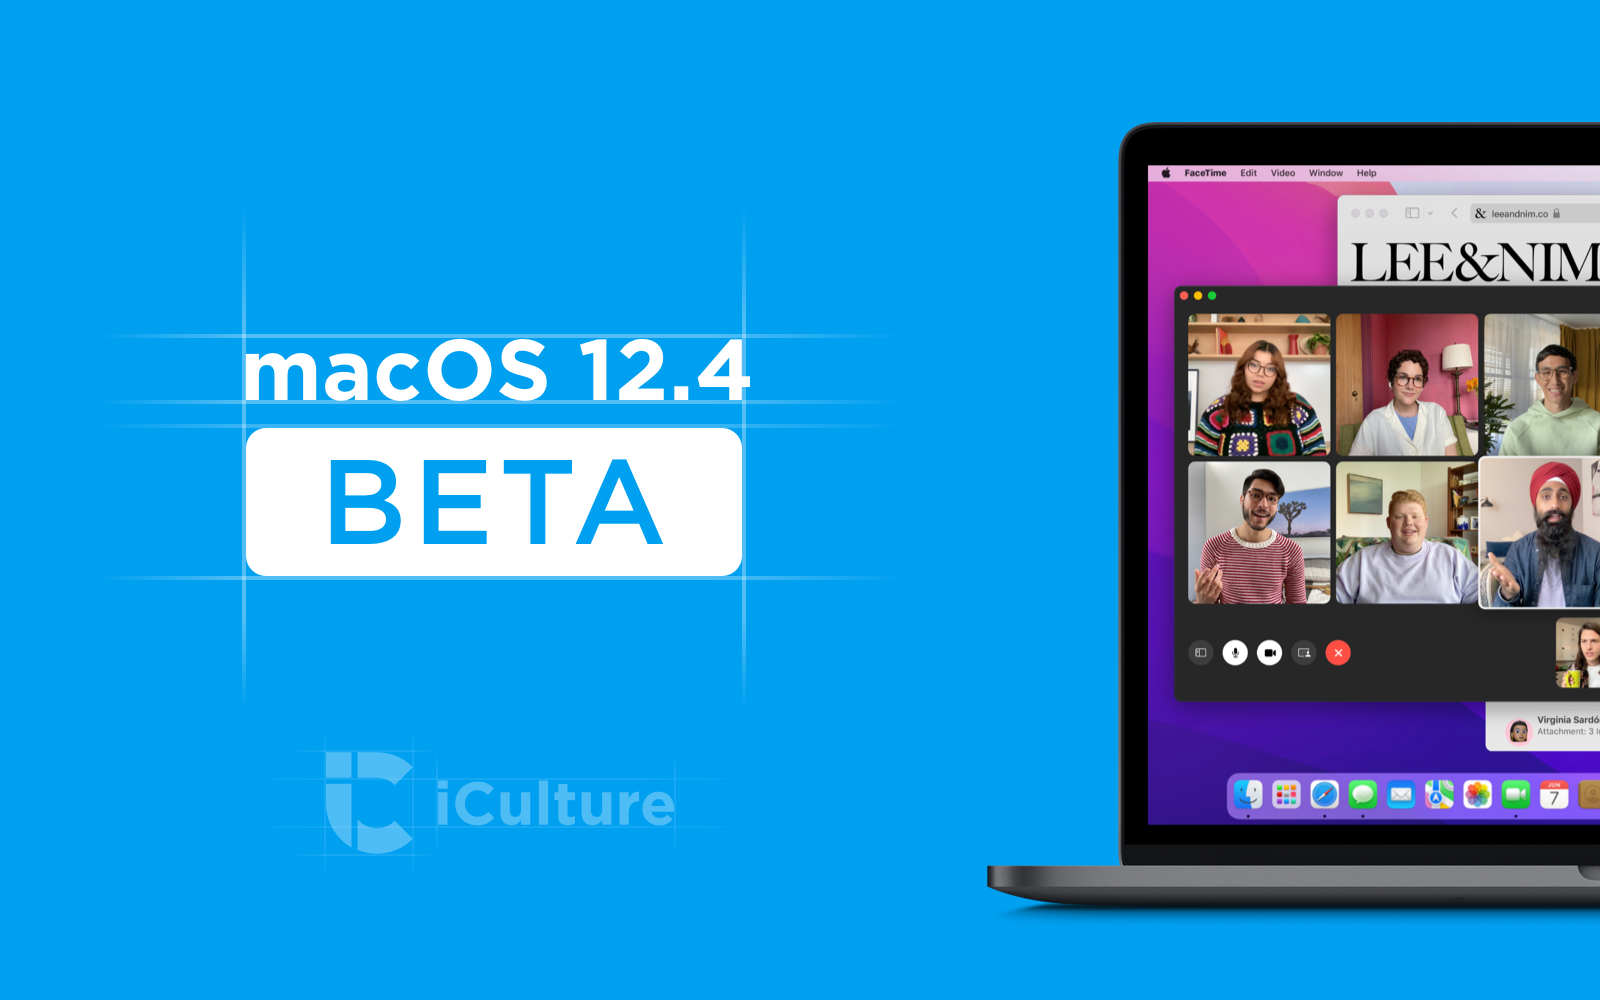 macOS Monterey 12.4 beta.